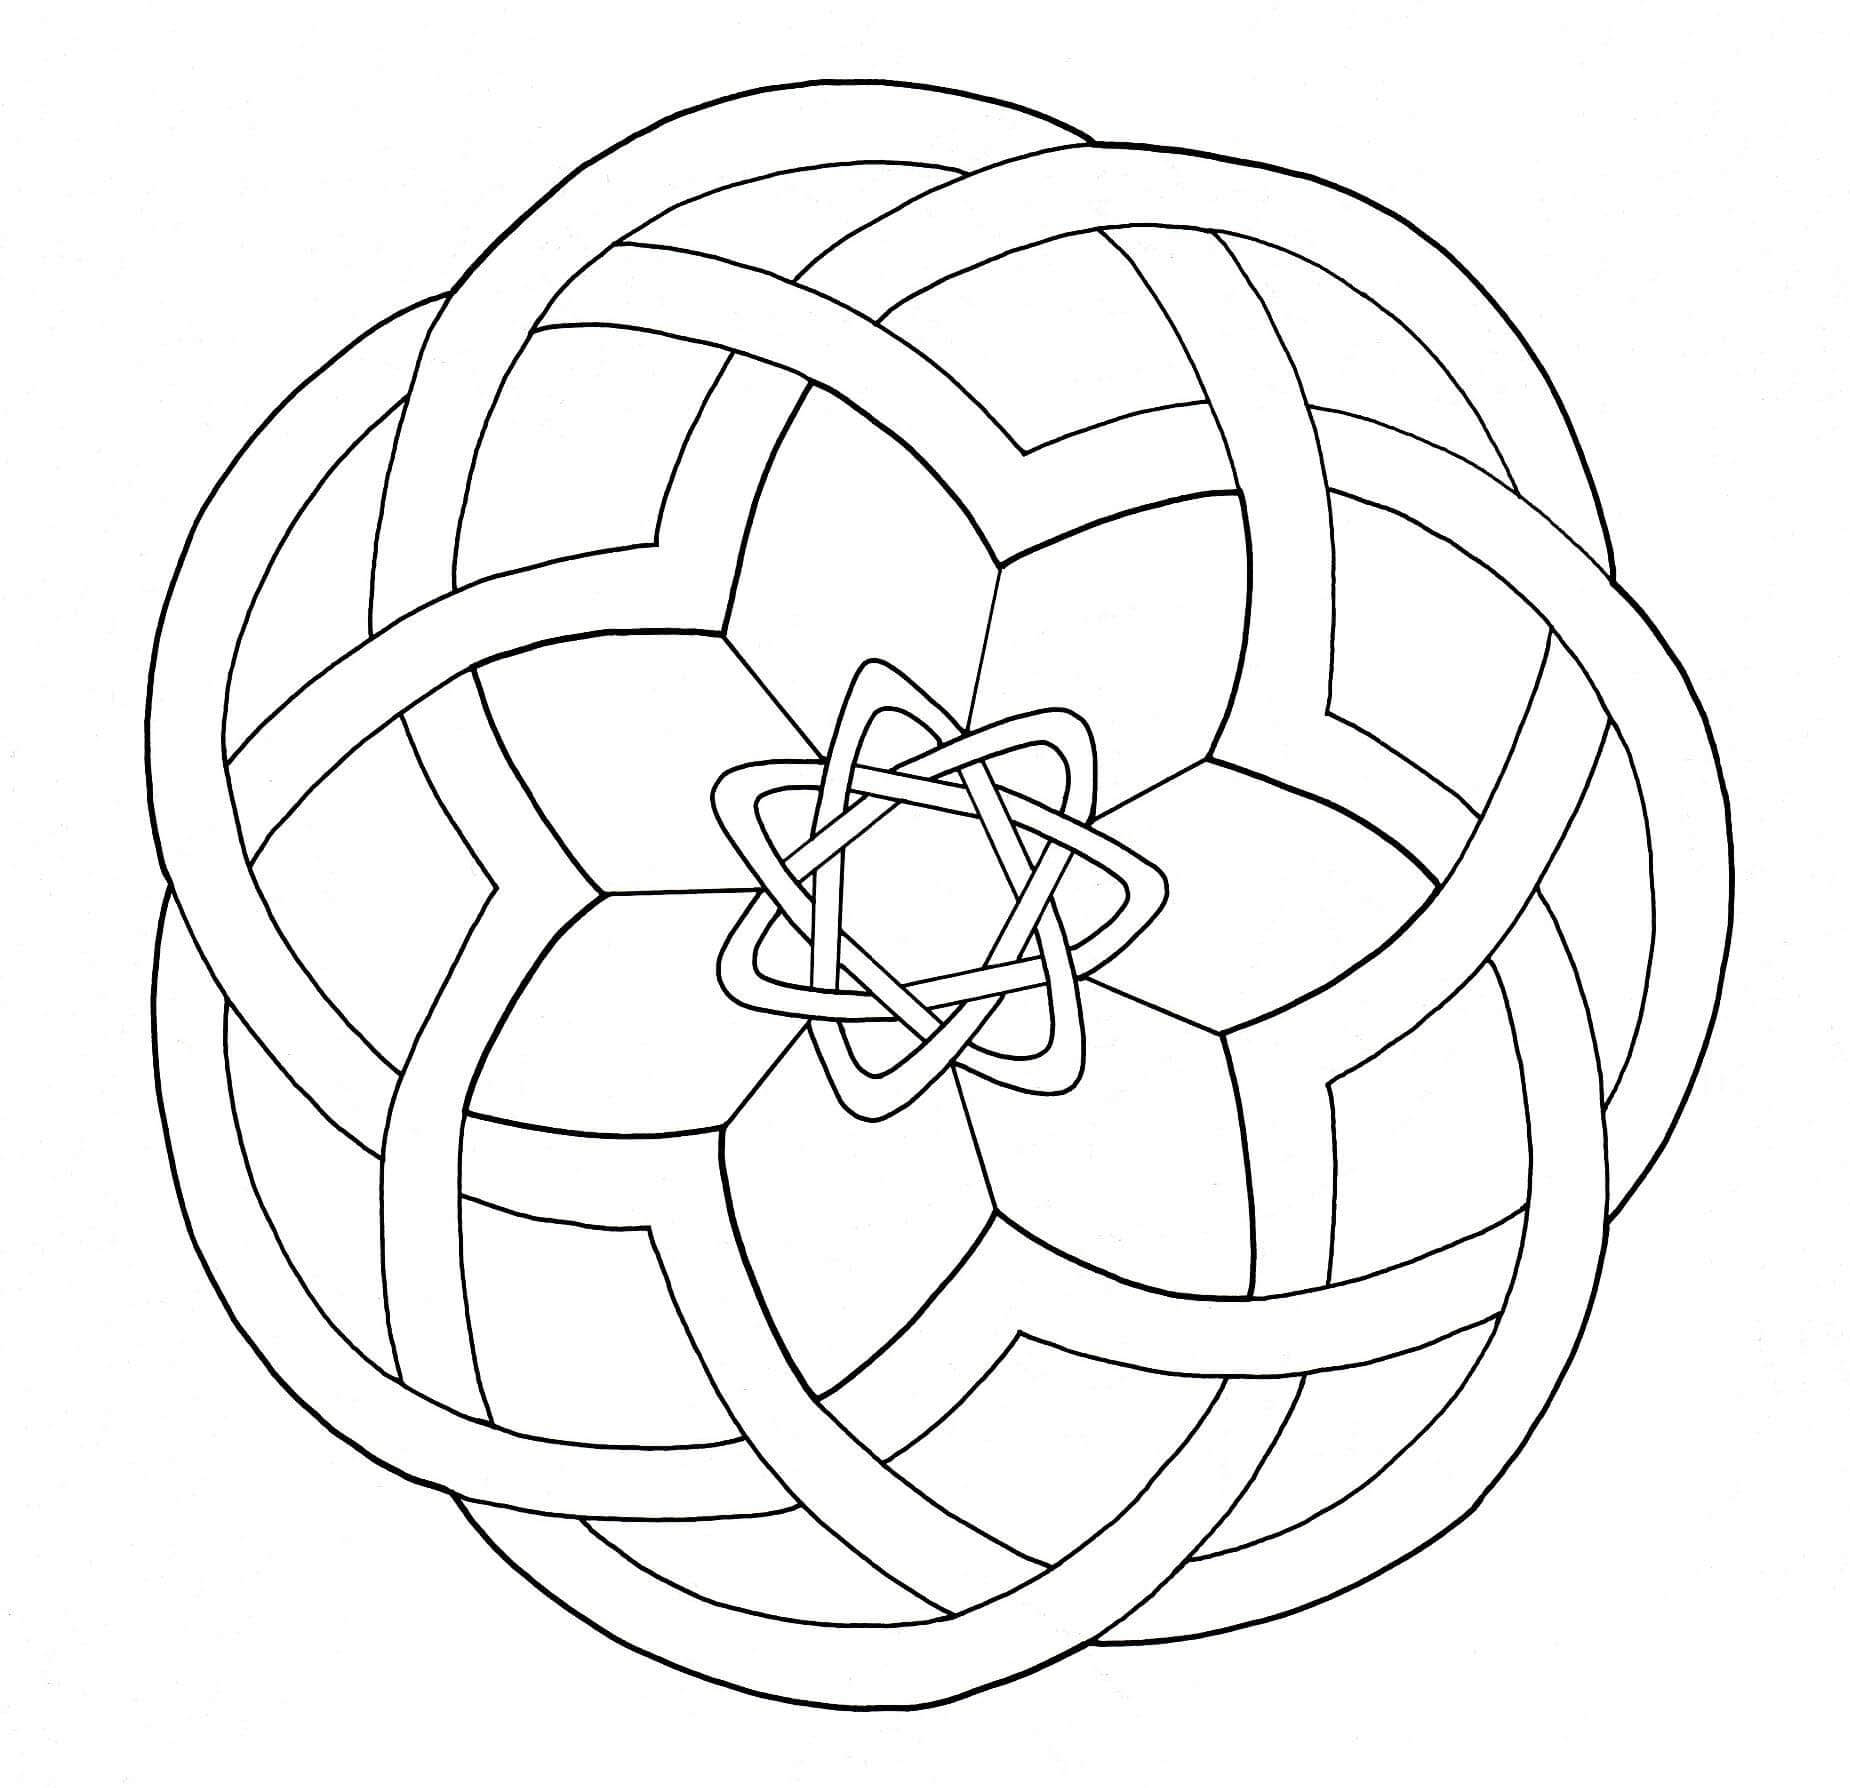 Mandala simples de Arte CeltaEsta coloração é uma representação maravilhosa da Arte Celta, tudo em simplicidade e harmonia.